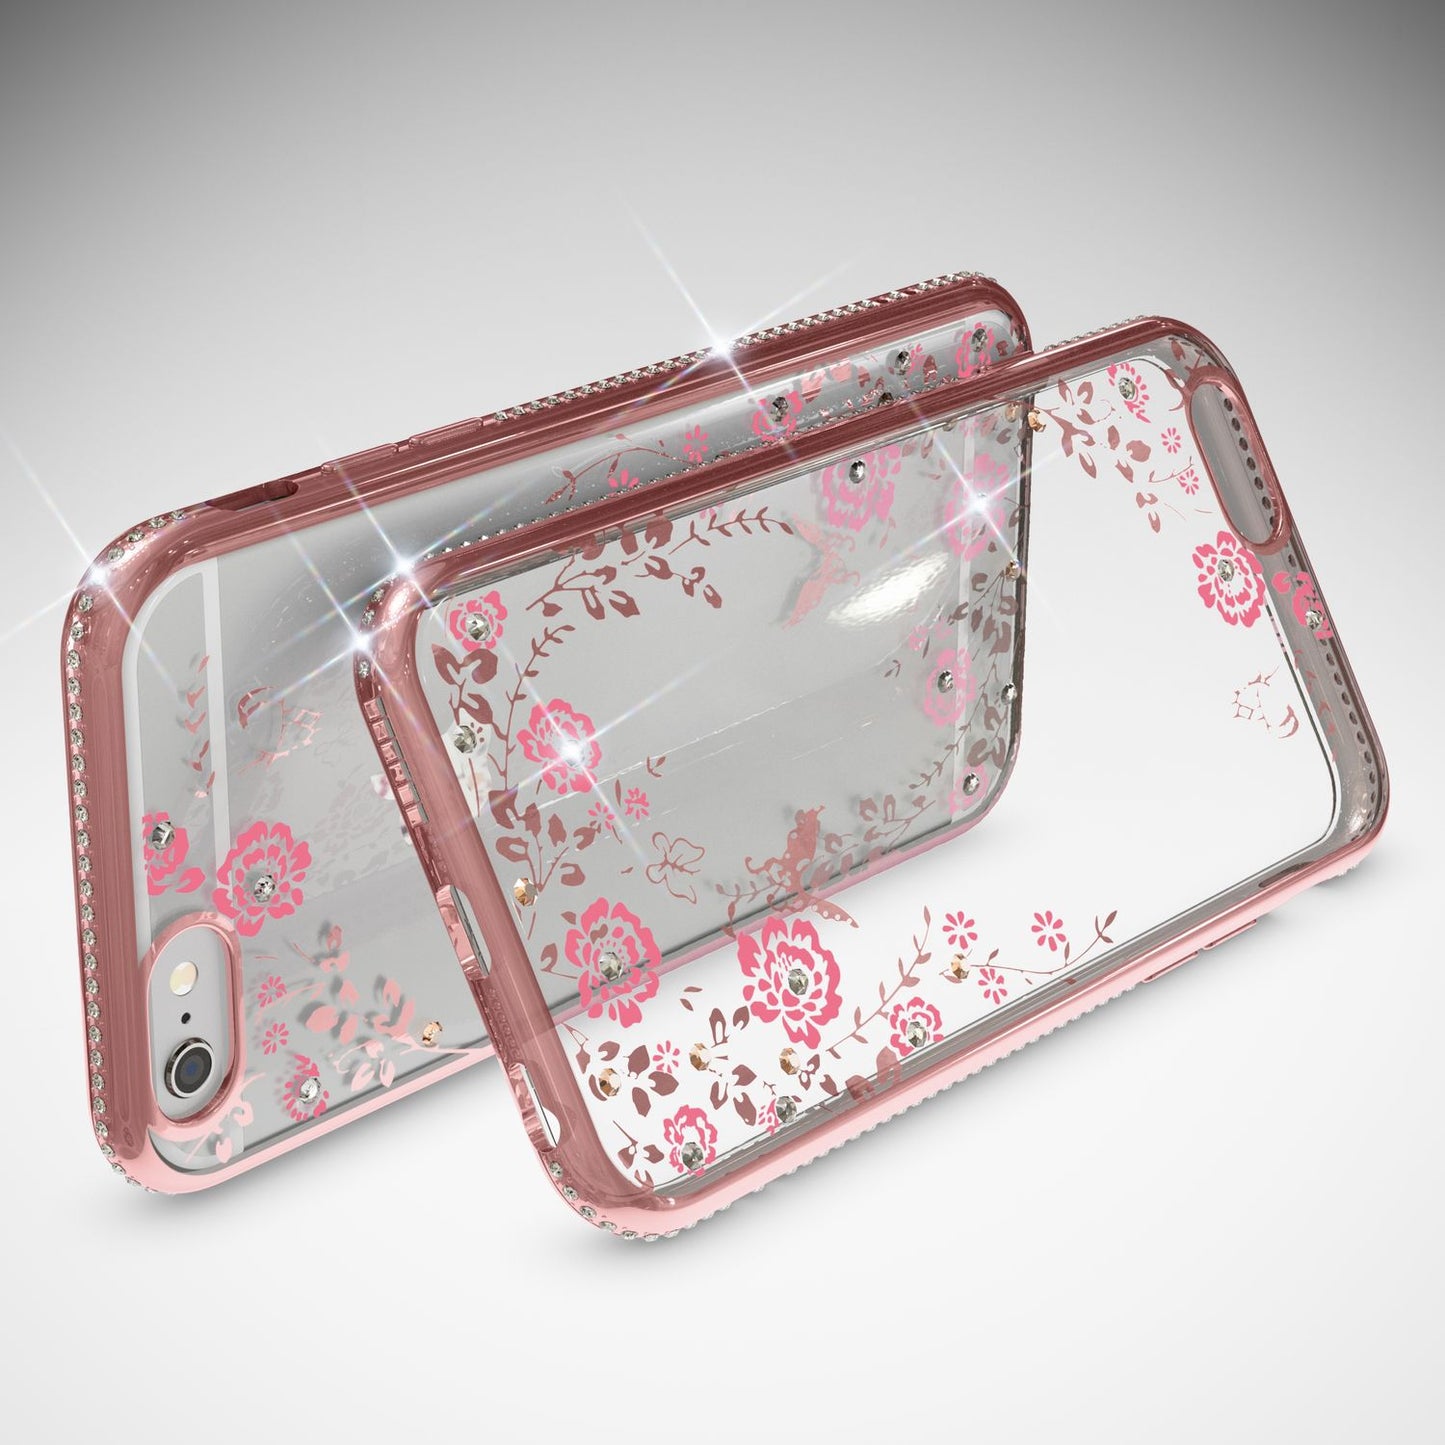 Apple iPhone 6 6S Handy Hülle von NALIA, Durchsichtiges Silikon Case Blumen Cover